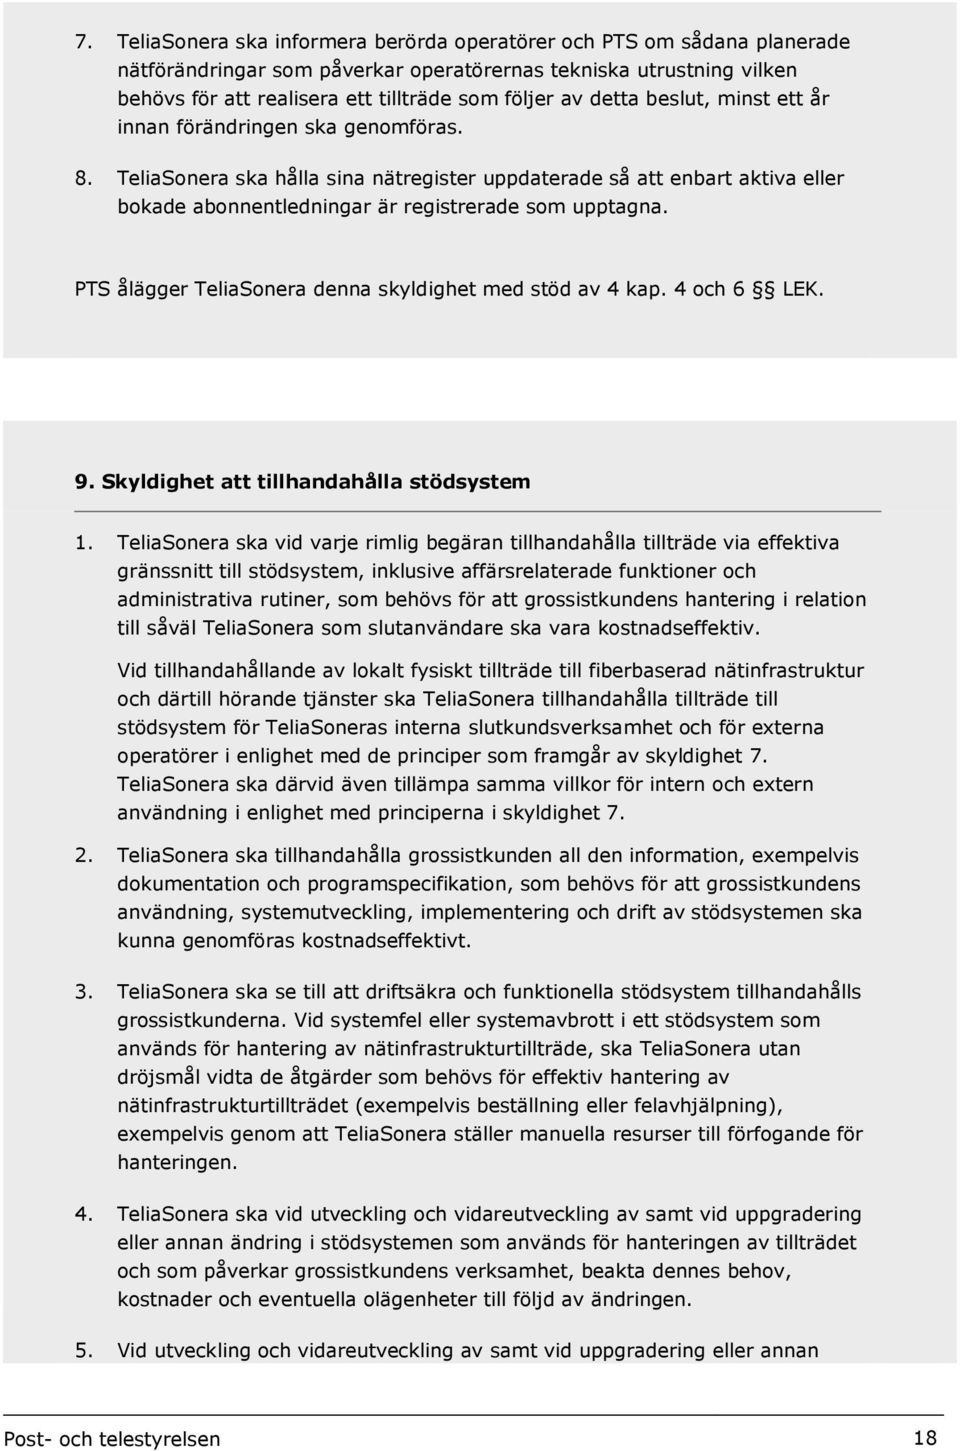 PTS ålägger TeliaSonera denna skyldighet med stöd av 4 kap. 4 och 6 LEK. 9. Skyldighet att tillhandahålla stödsystem 1.